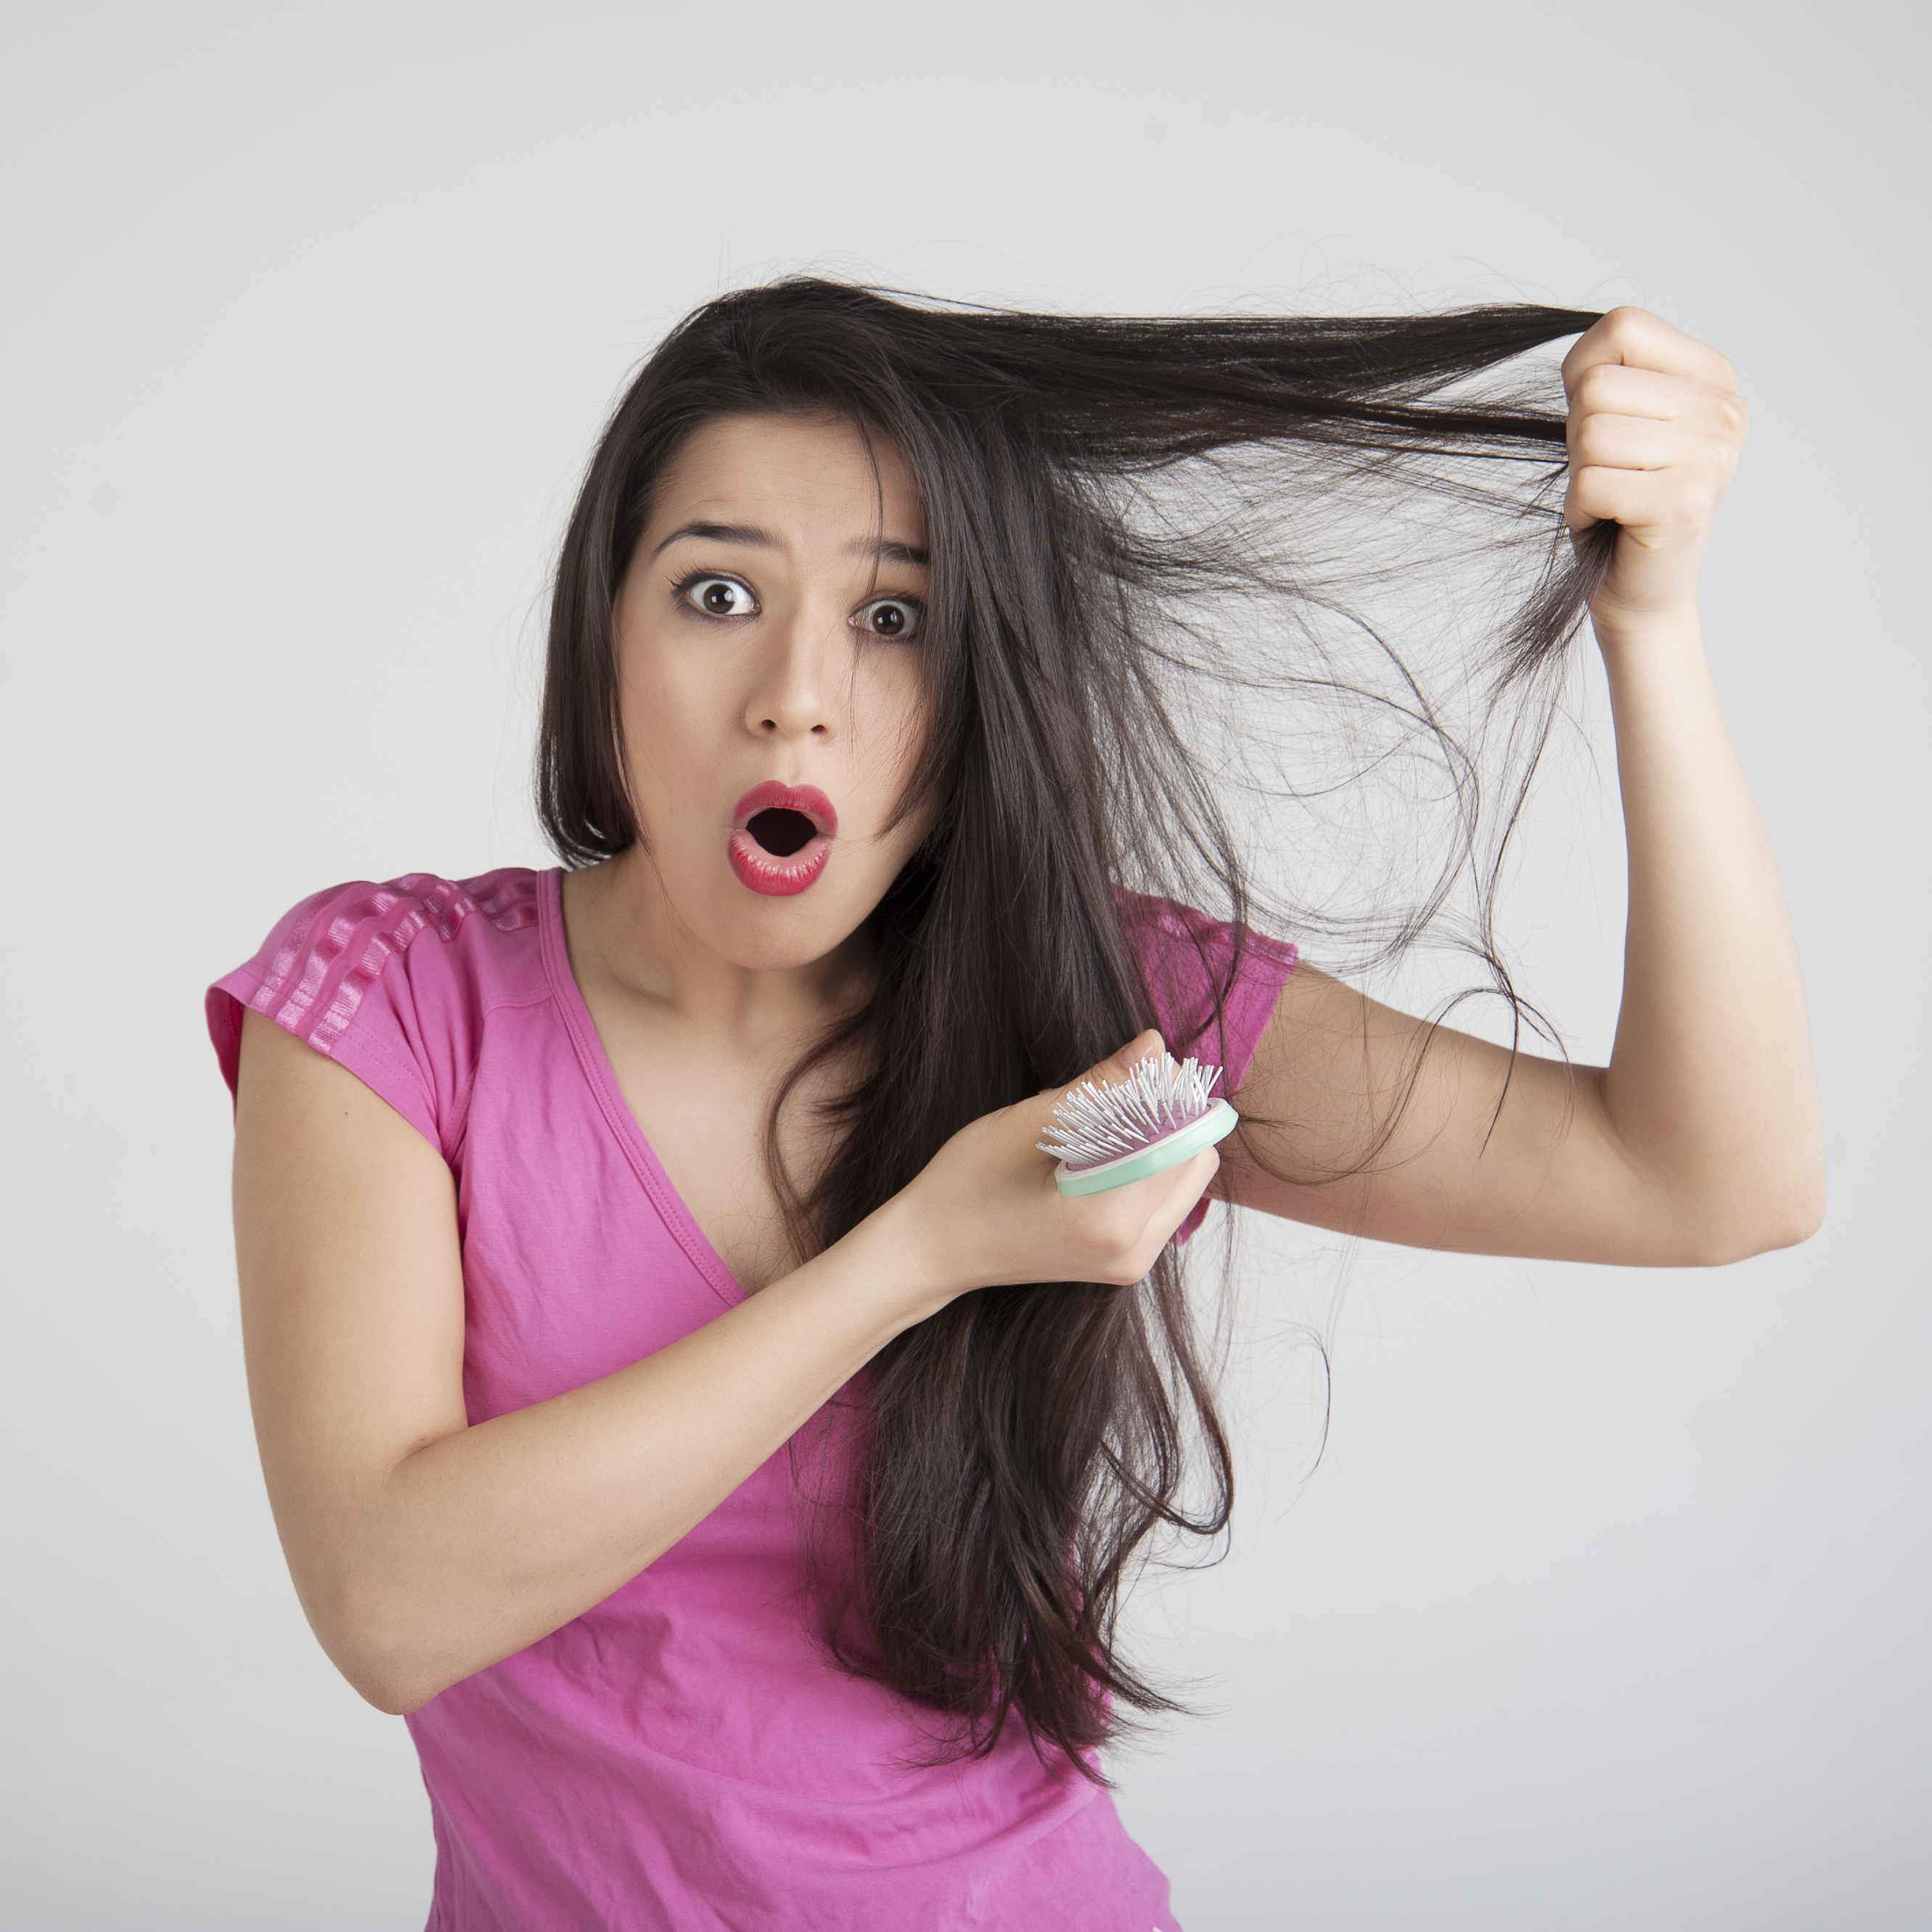 Opadanje kose često je posljedica neravnoteže spolnih hormona